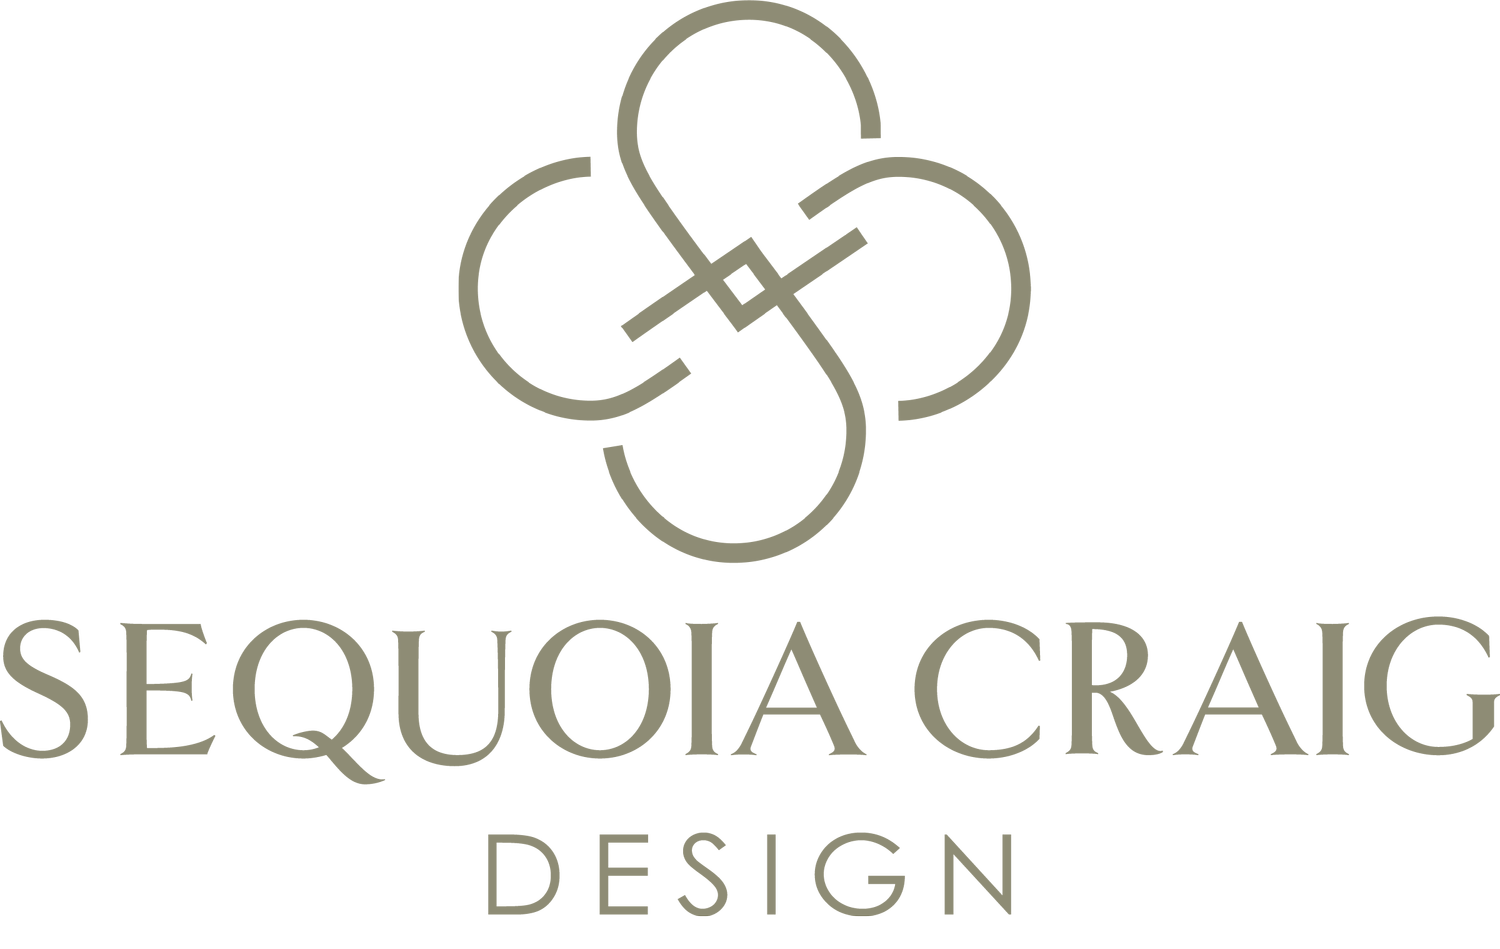 Sequoia Craig Design